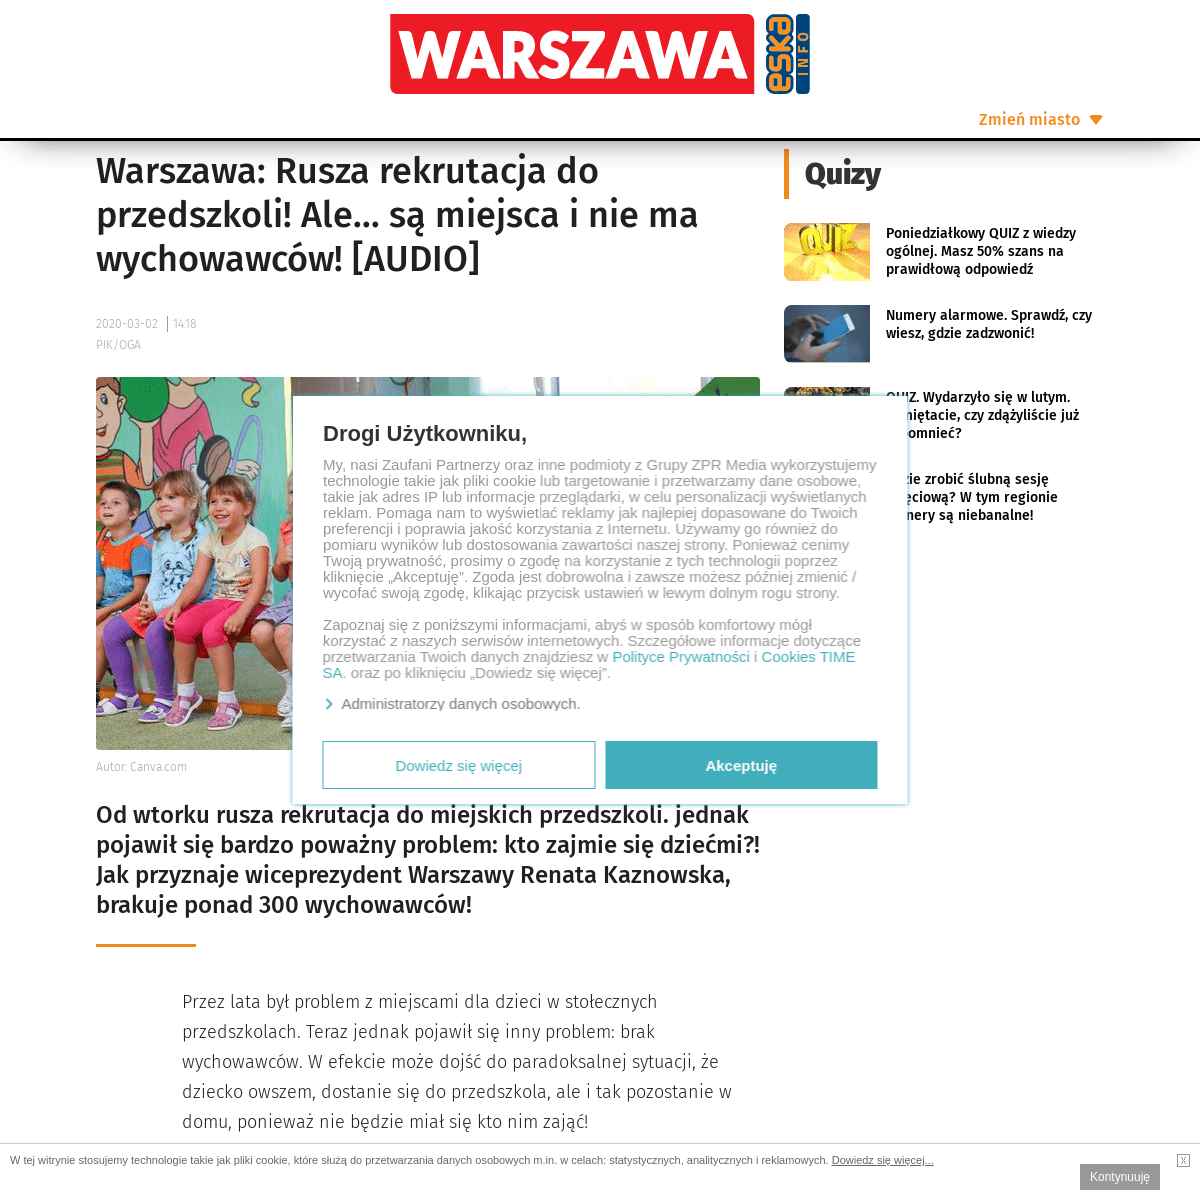 A complete backup of www.se.pl/warszawa/warszawa-rusza-rekrutacja-do-przedszkoli-ale-sa-miejsca-i-nie-ma-wychowawcow-audio-aa-kz